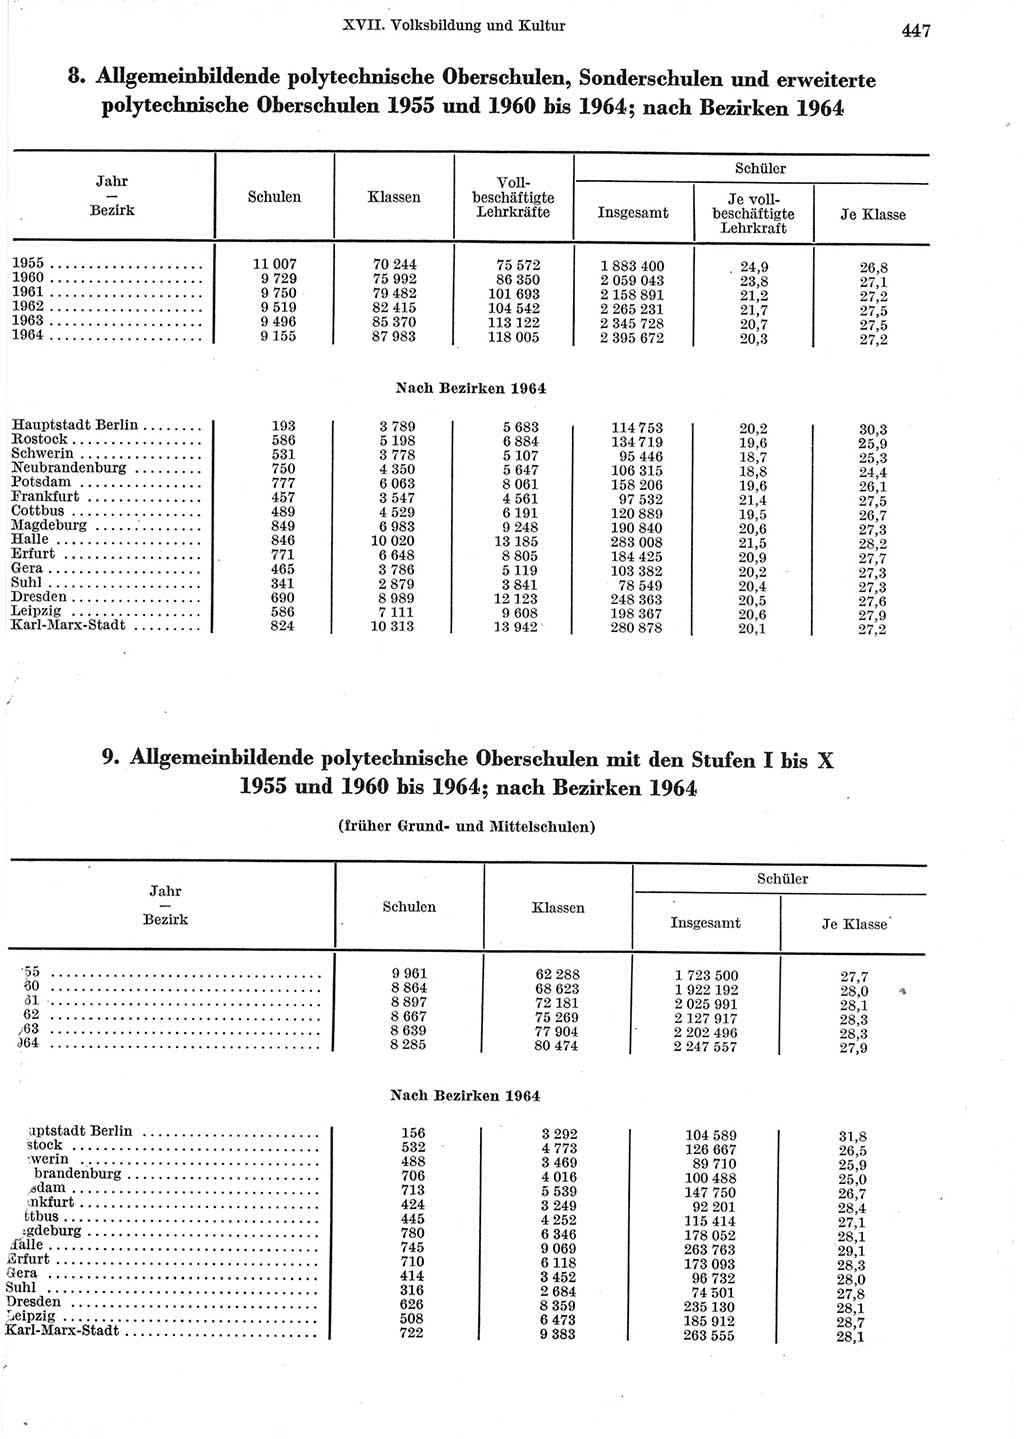 Statistisches Jahrbuch der Deutschen Demokratischen Republik (DDR) 1965, Seite 447 (Stat. Jb. DDR 1965, S. 447)